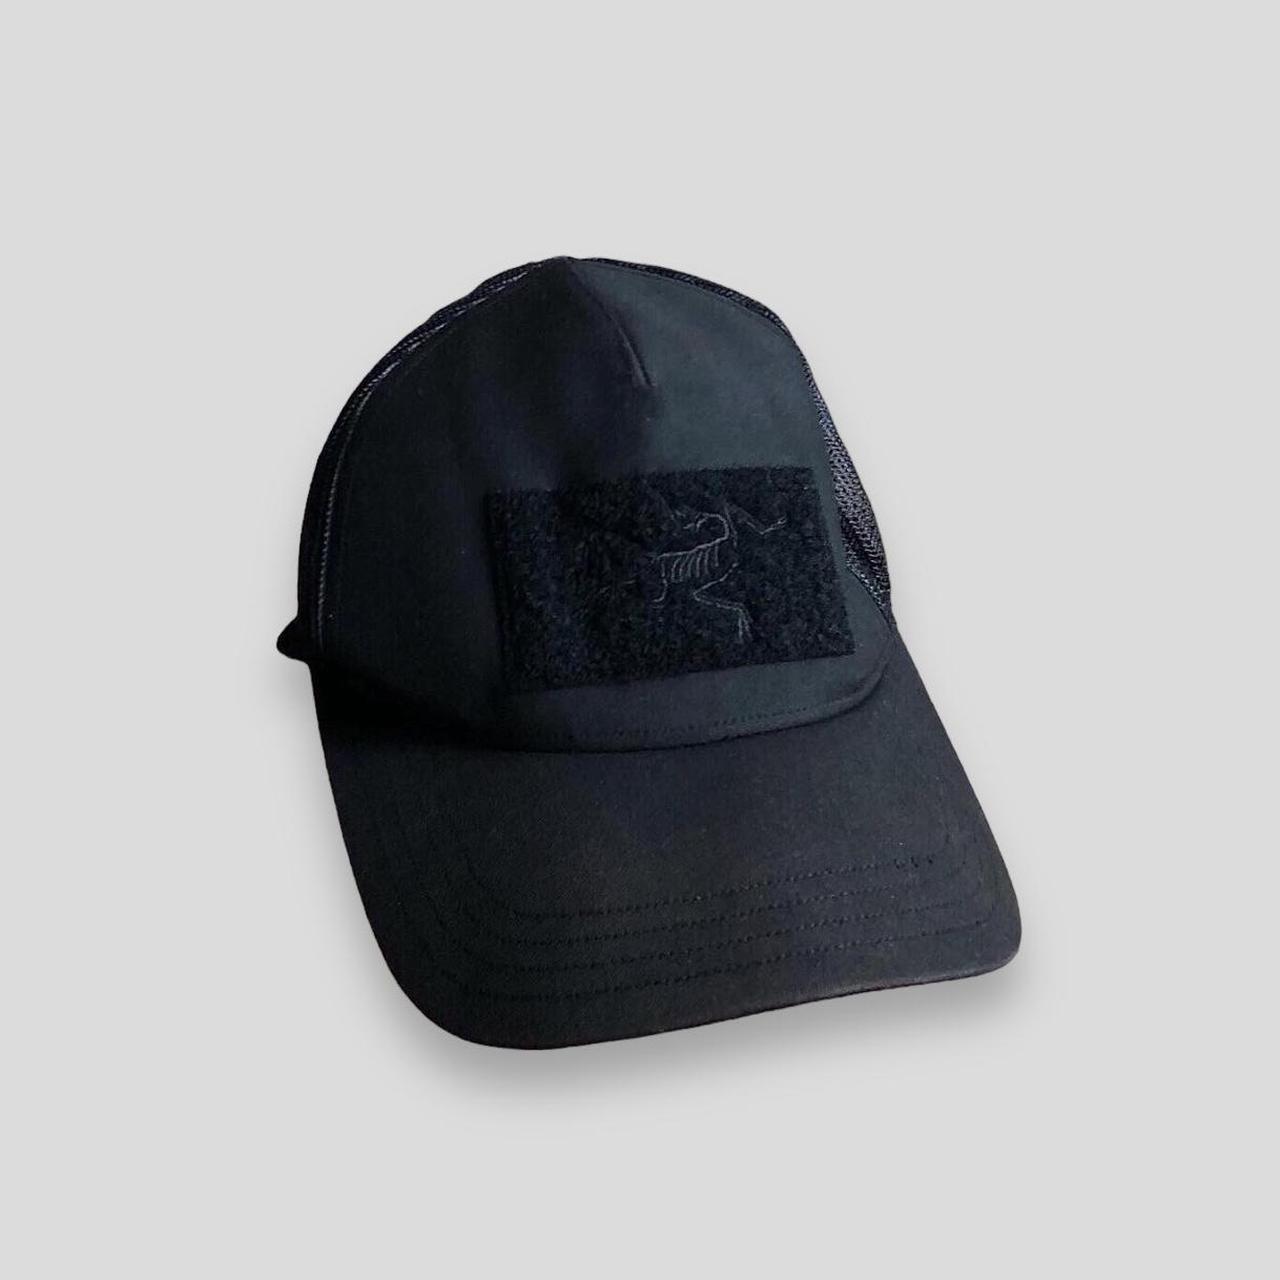 Arc’teryx leaf cap hat in black. Gen 2 with bird...